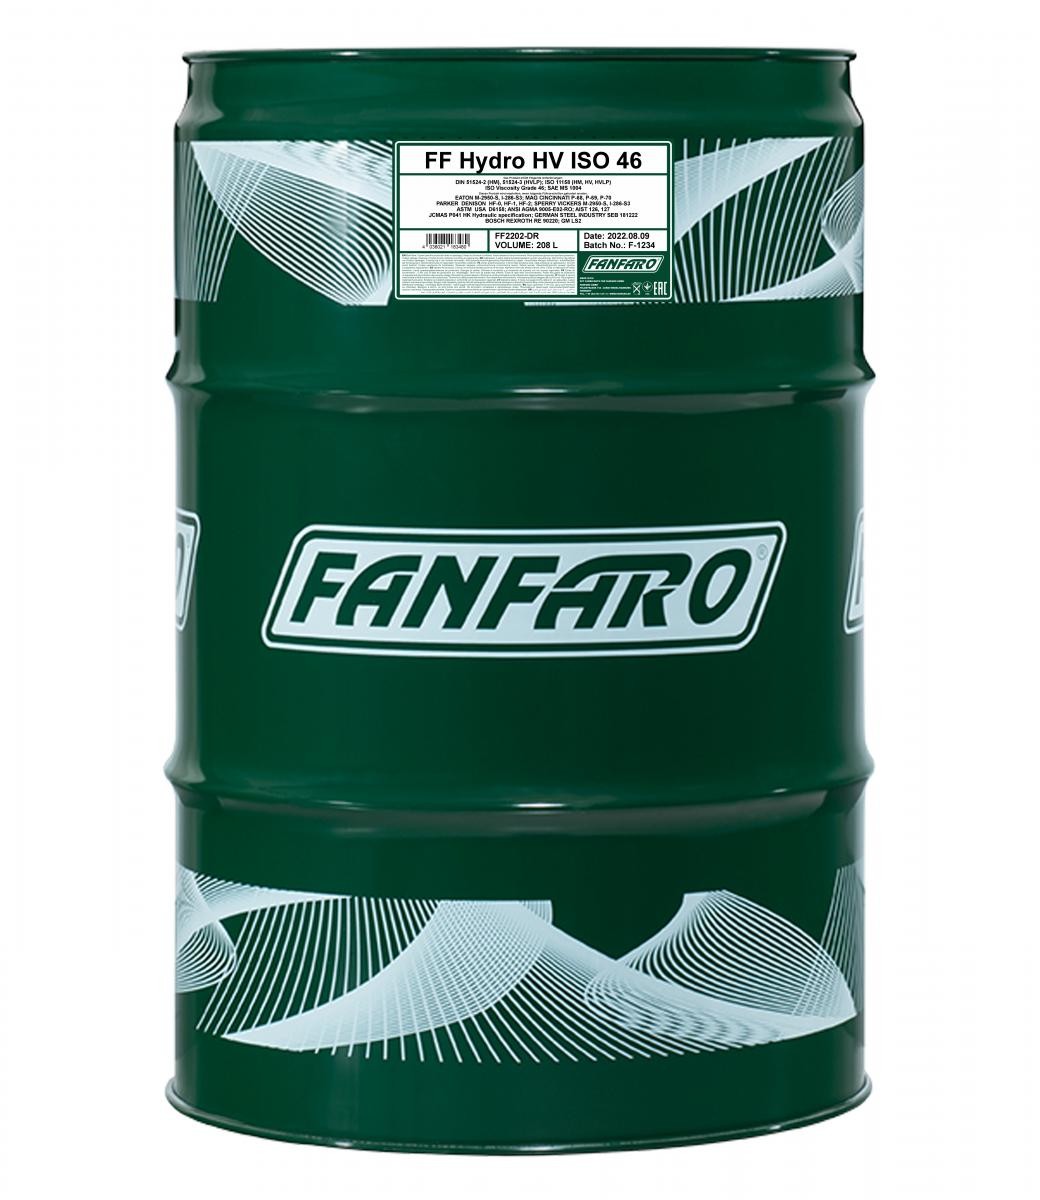 FANFARO HYDRO HV Capacity: 208l Hydraulic fluid FF2202-DR buy